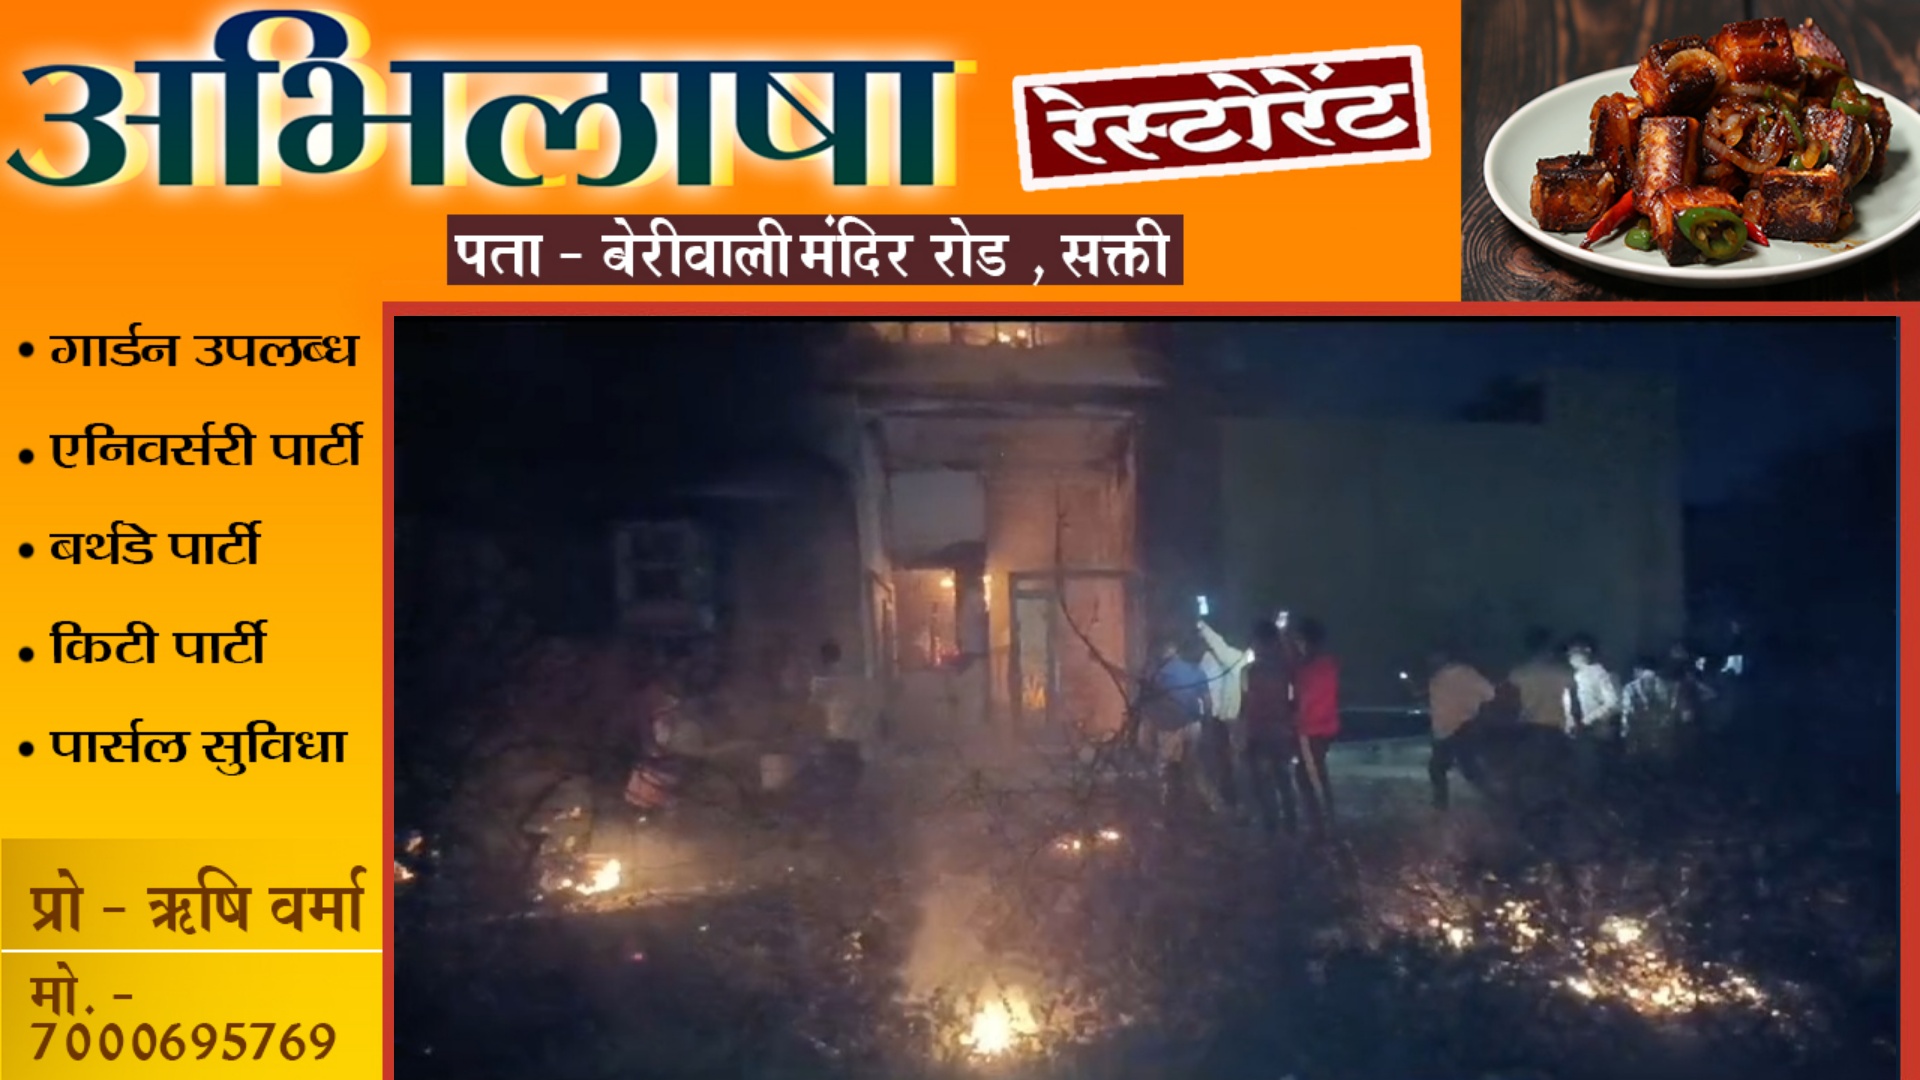 छत्तीसगढ़ से बड़ी खबर - मकान में लगी भीषण आग , माँ और बेटा जिंदा जले , आग पर काबू पाने का प्रयास जारी